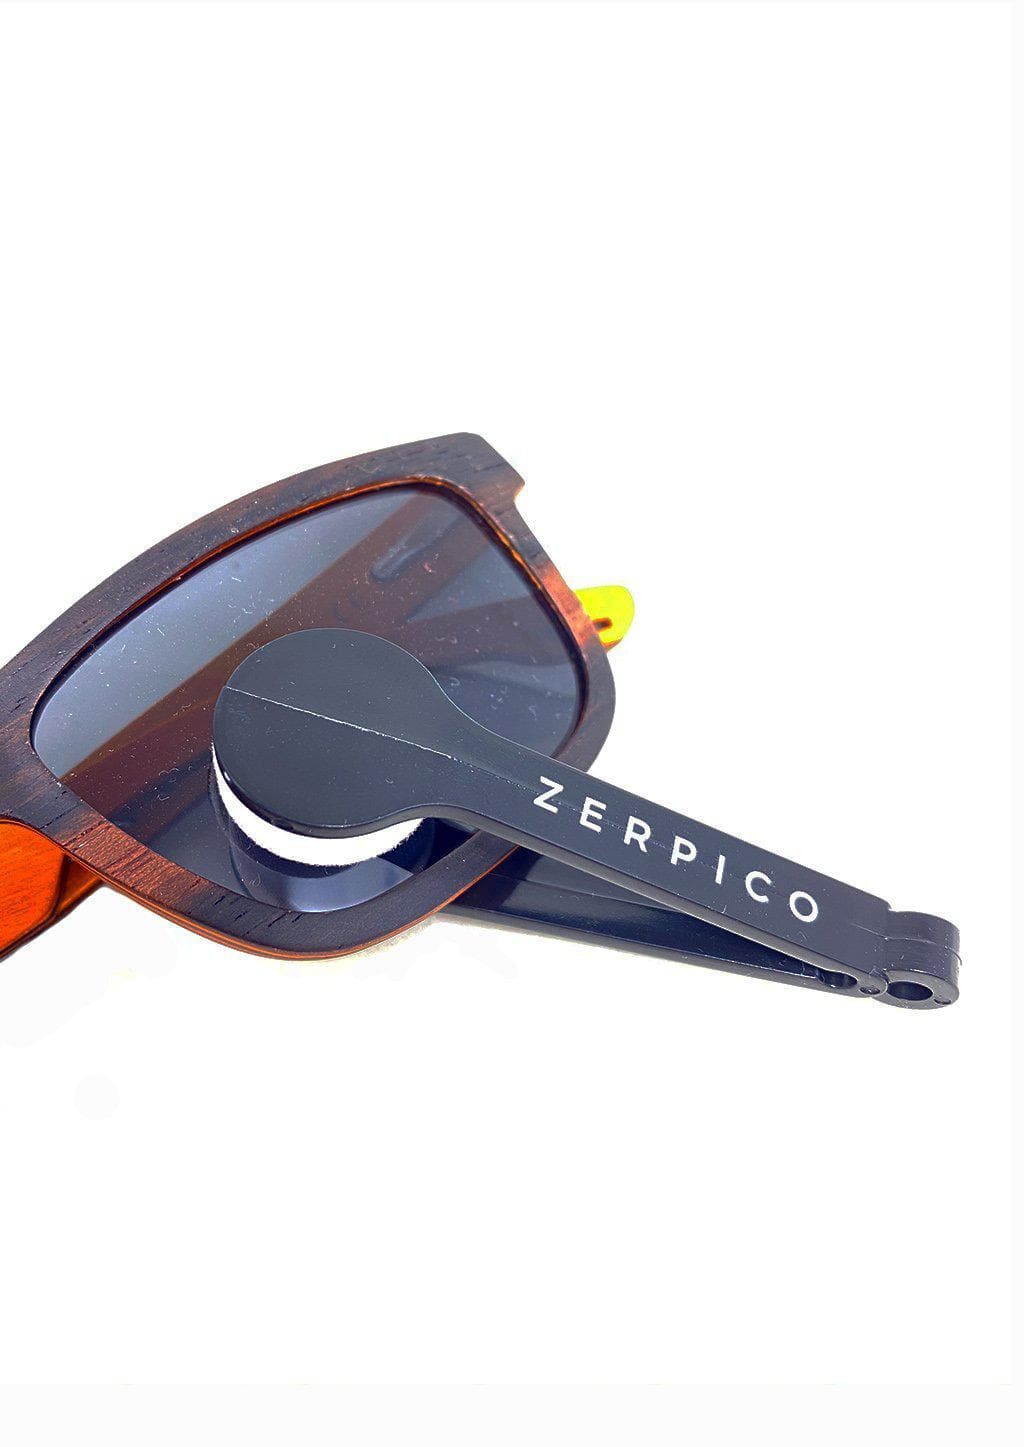 Brillenreiniger - Zerpico Portable Glasses Cleaner-1